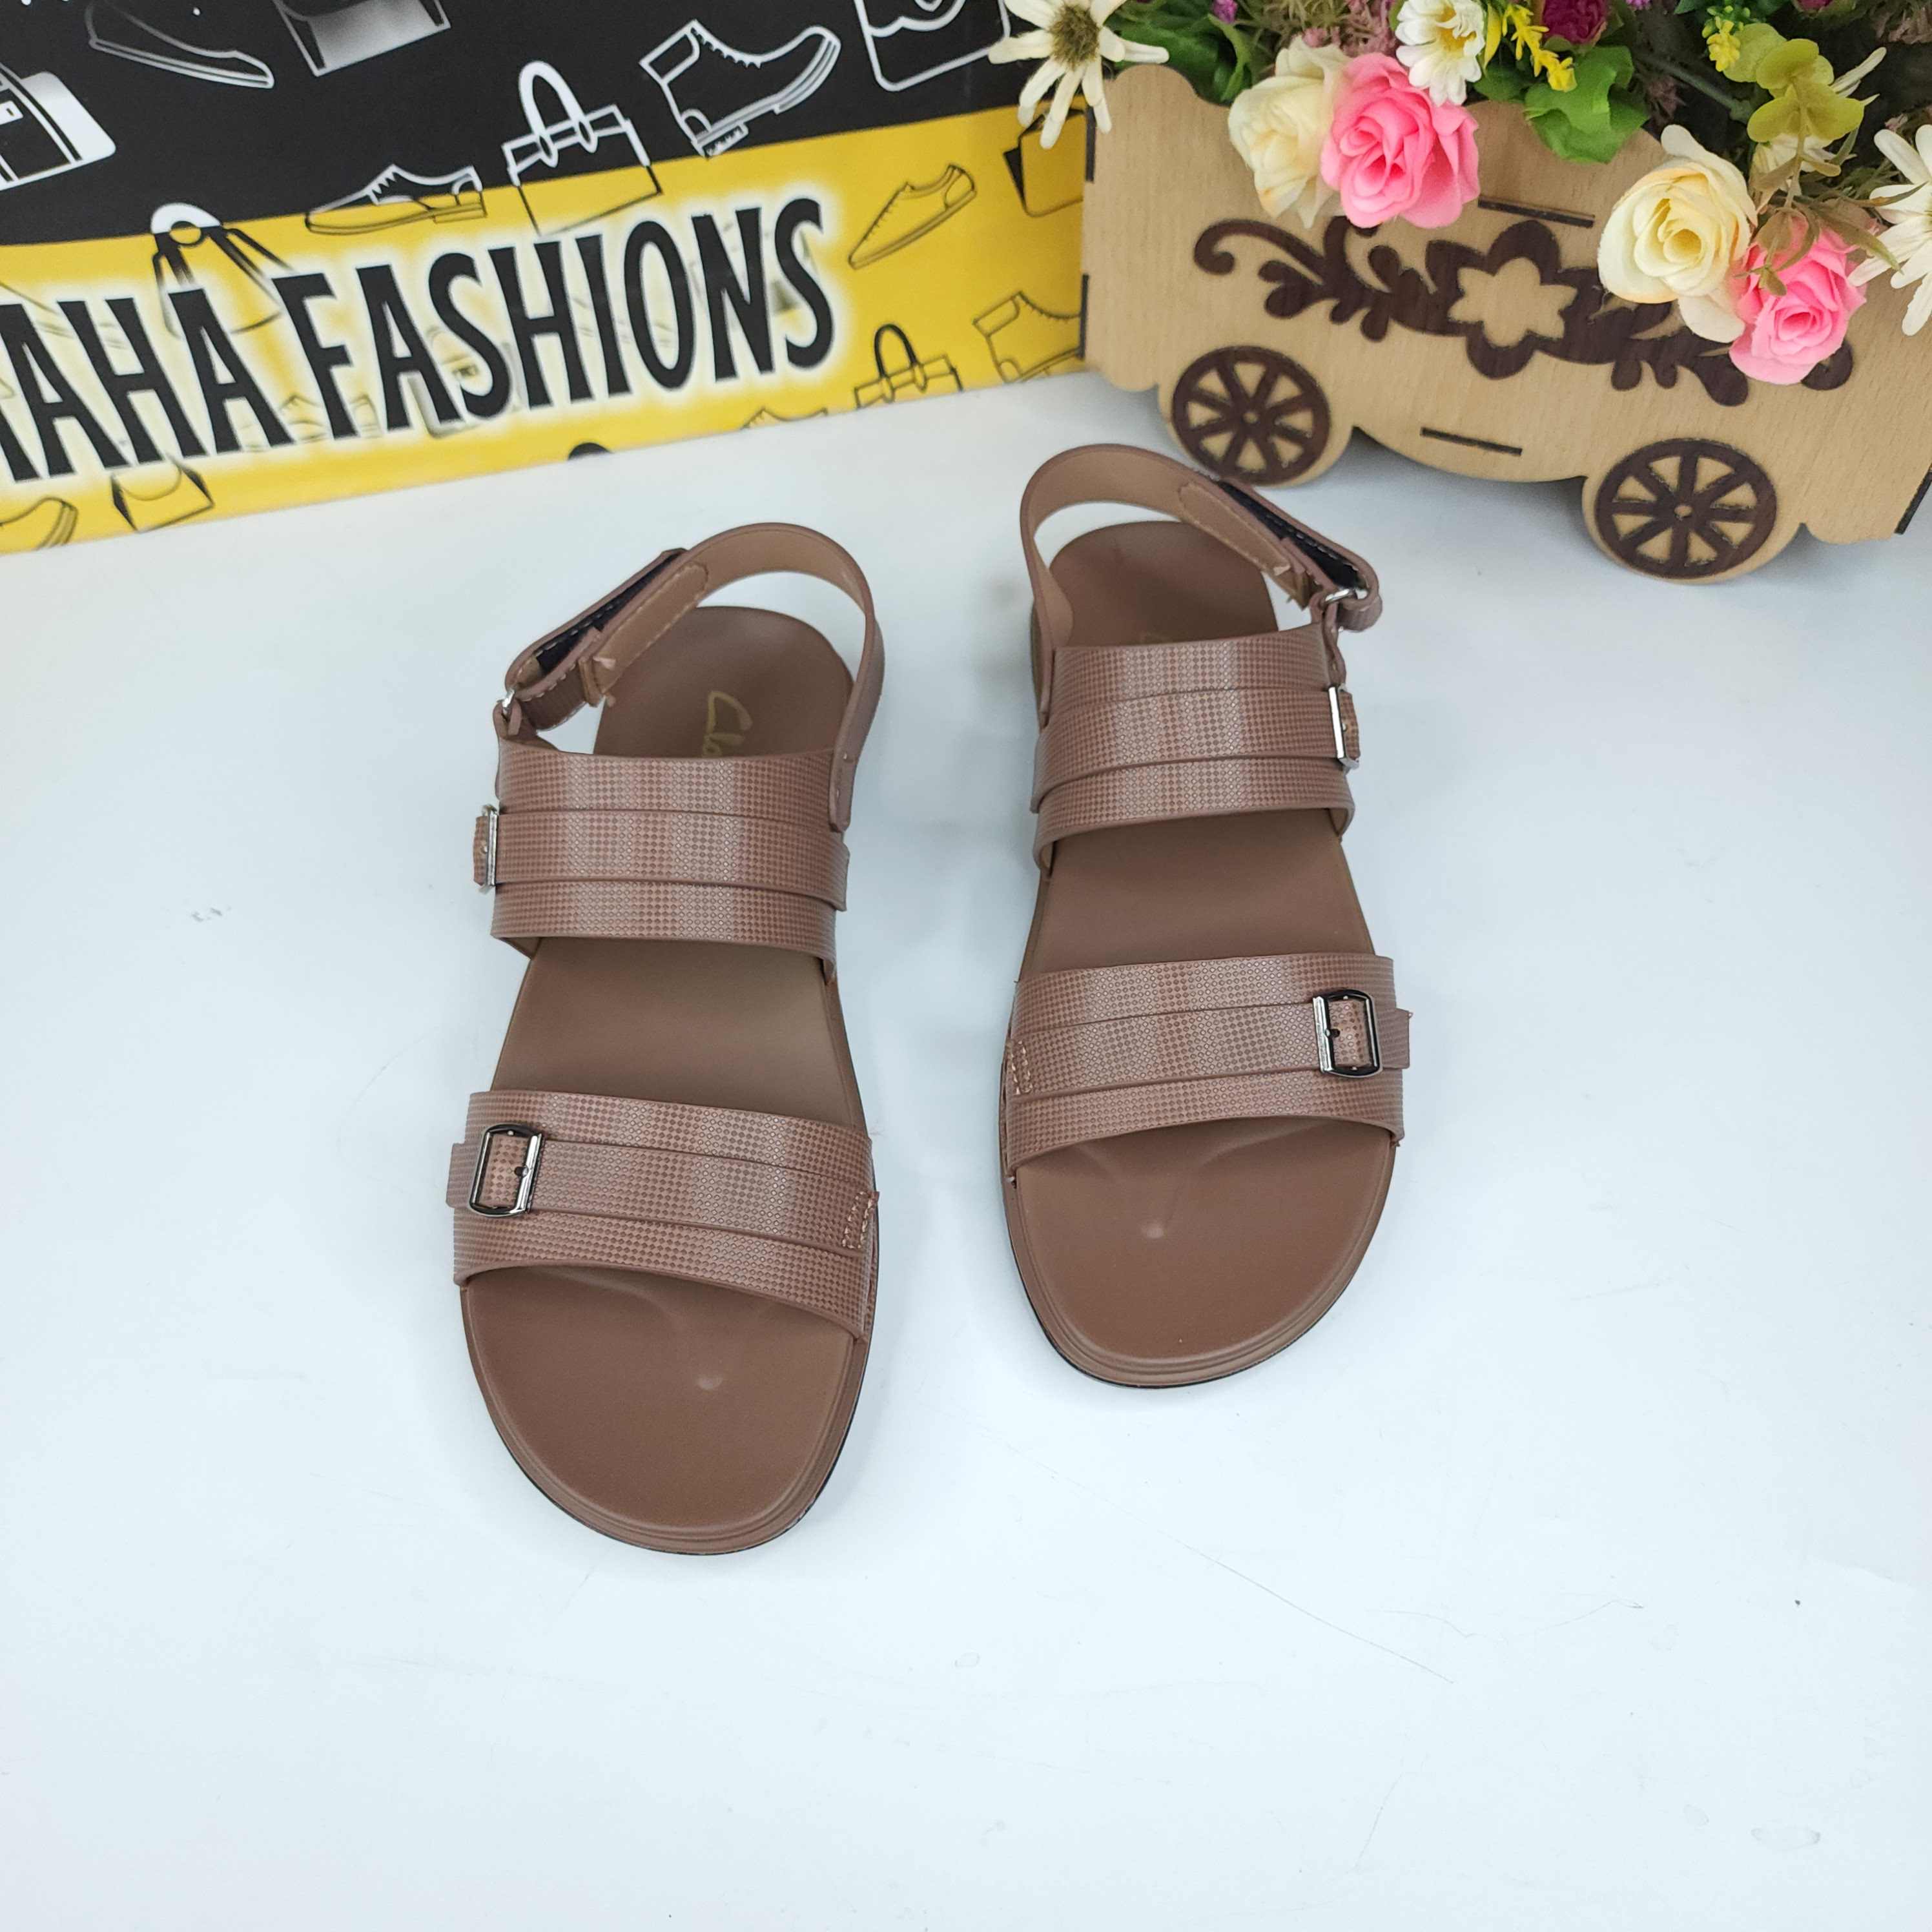 Tan Men Sandals - Maha fashions -  